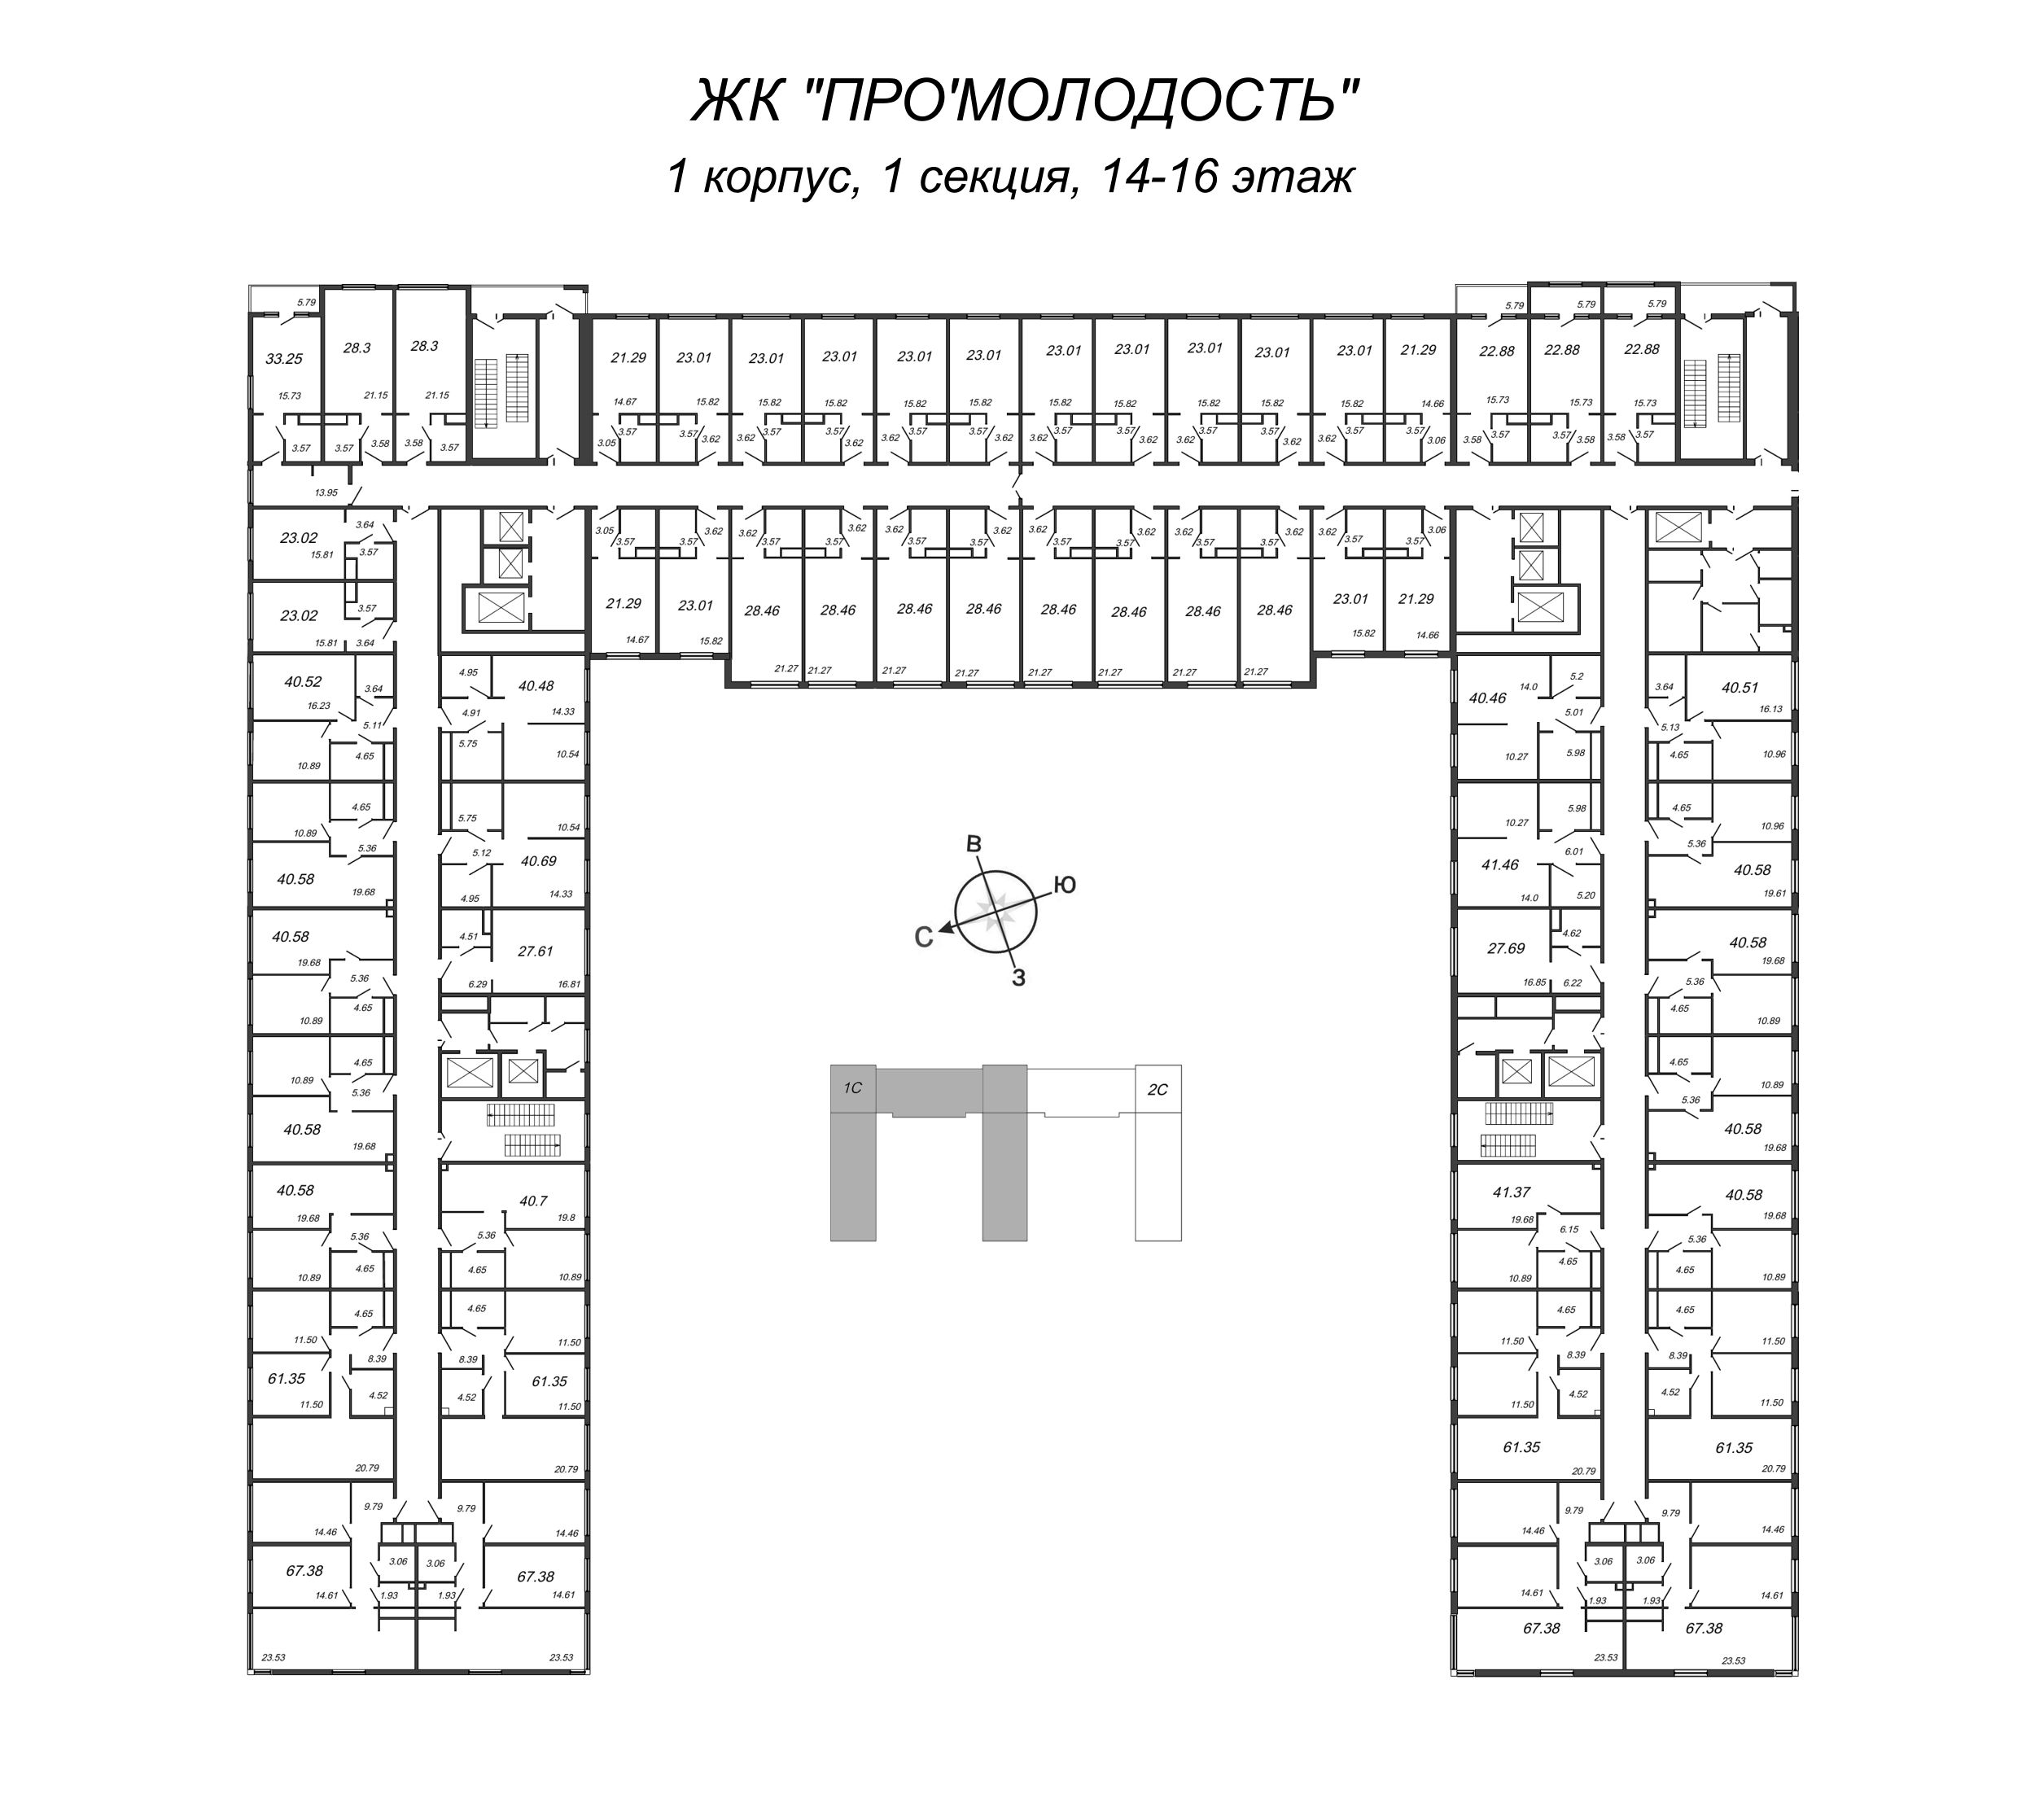 3-комнатная (Евро) квартира, 61.35 м² в ЖК "ПРО'МОЛОDОСТЬ" - планировка этажа